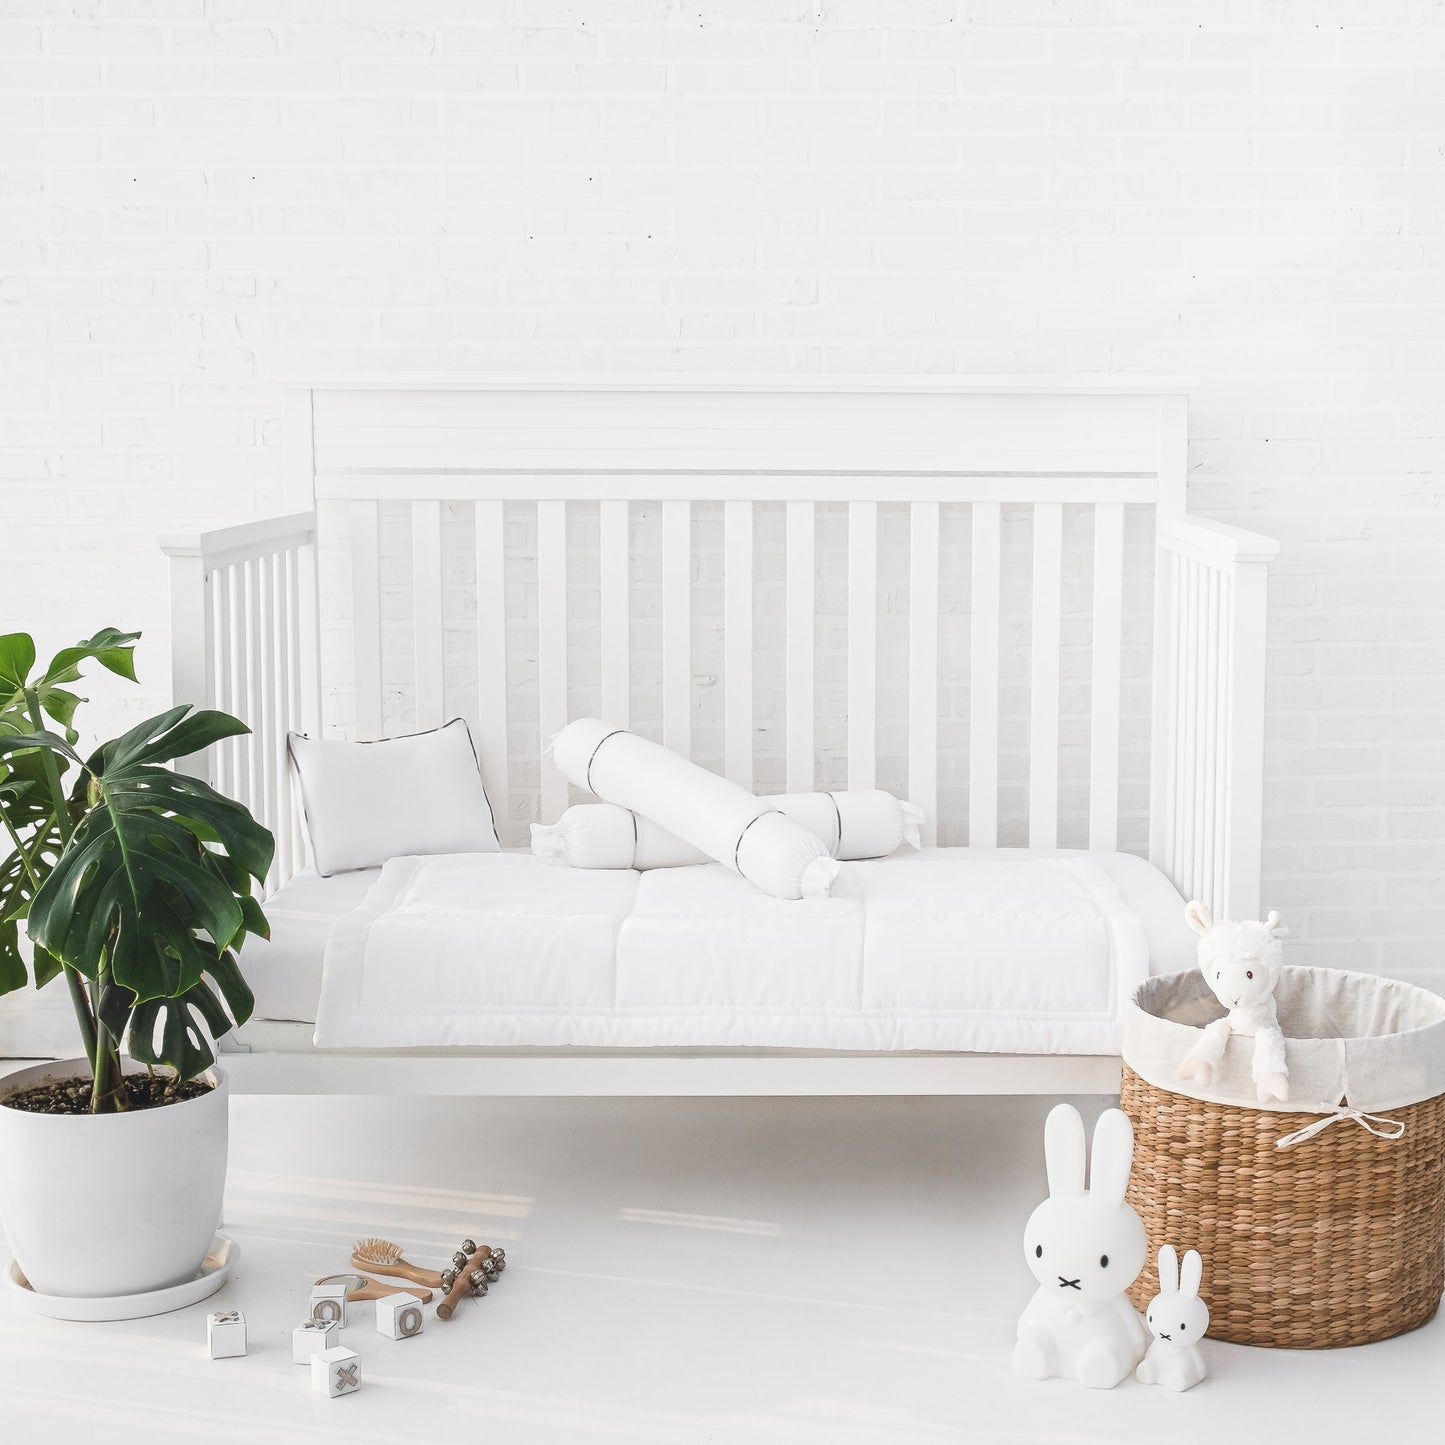 Ava & Ava - 100% Organic Bamboo Lyocell 4pc Baby Comforter Set (6938986872866)